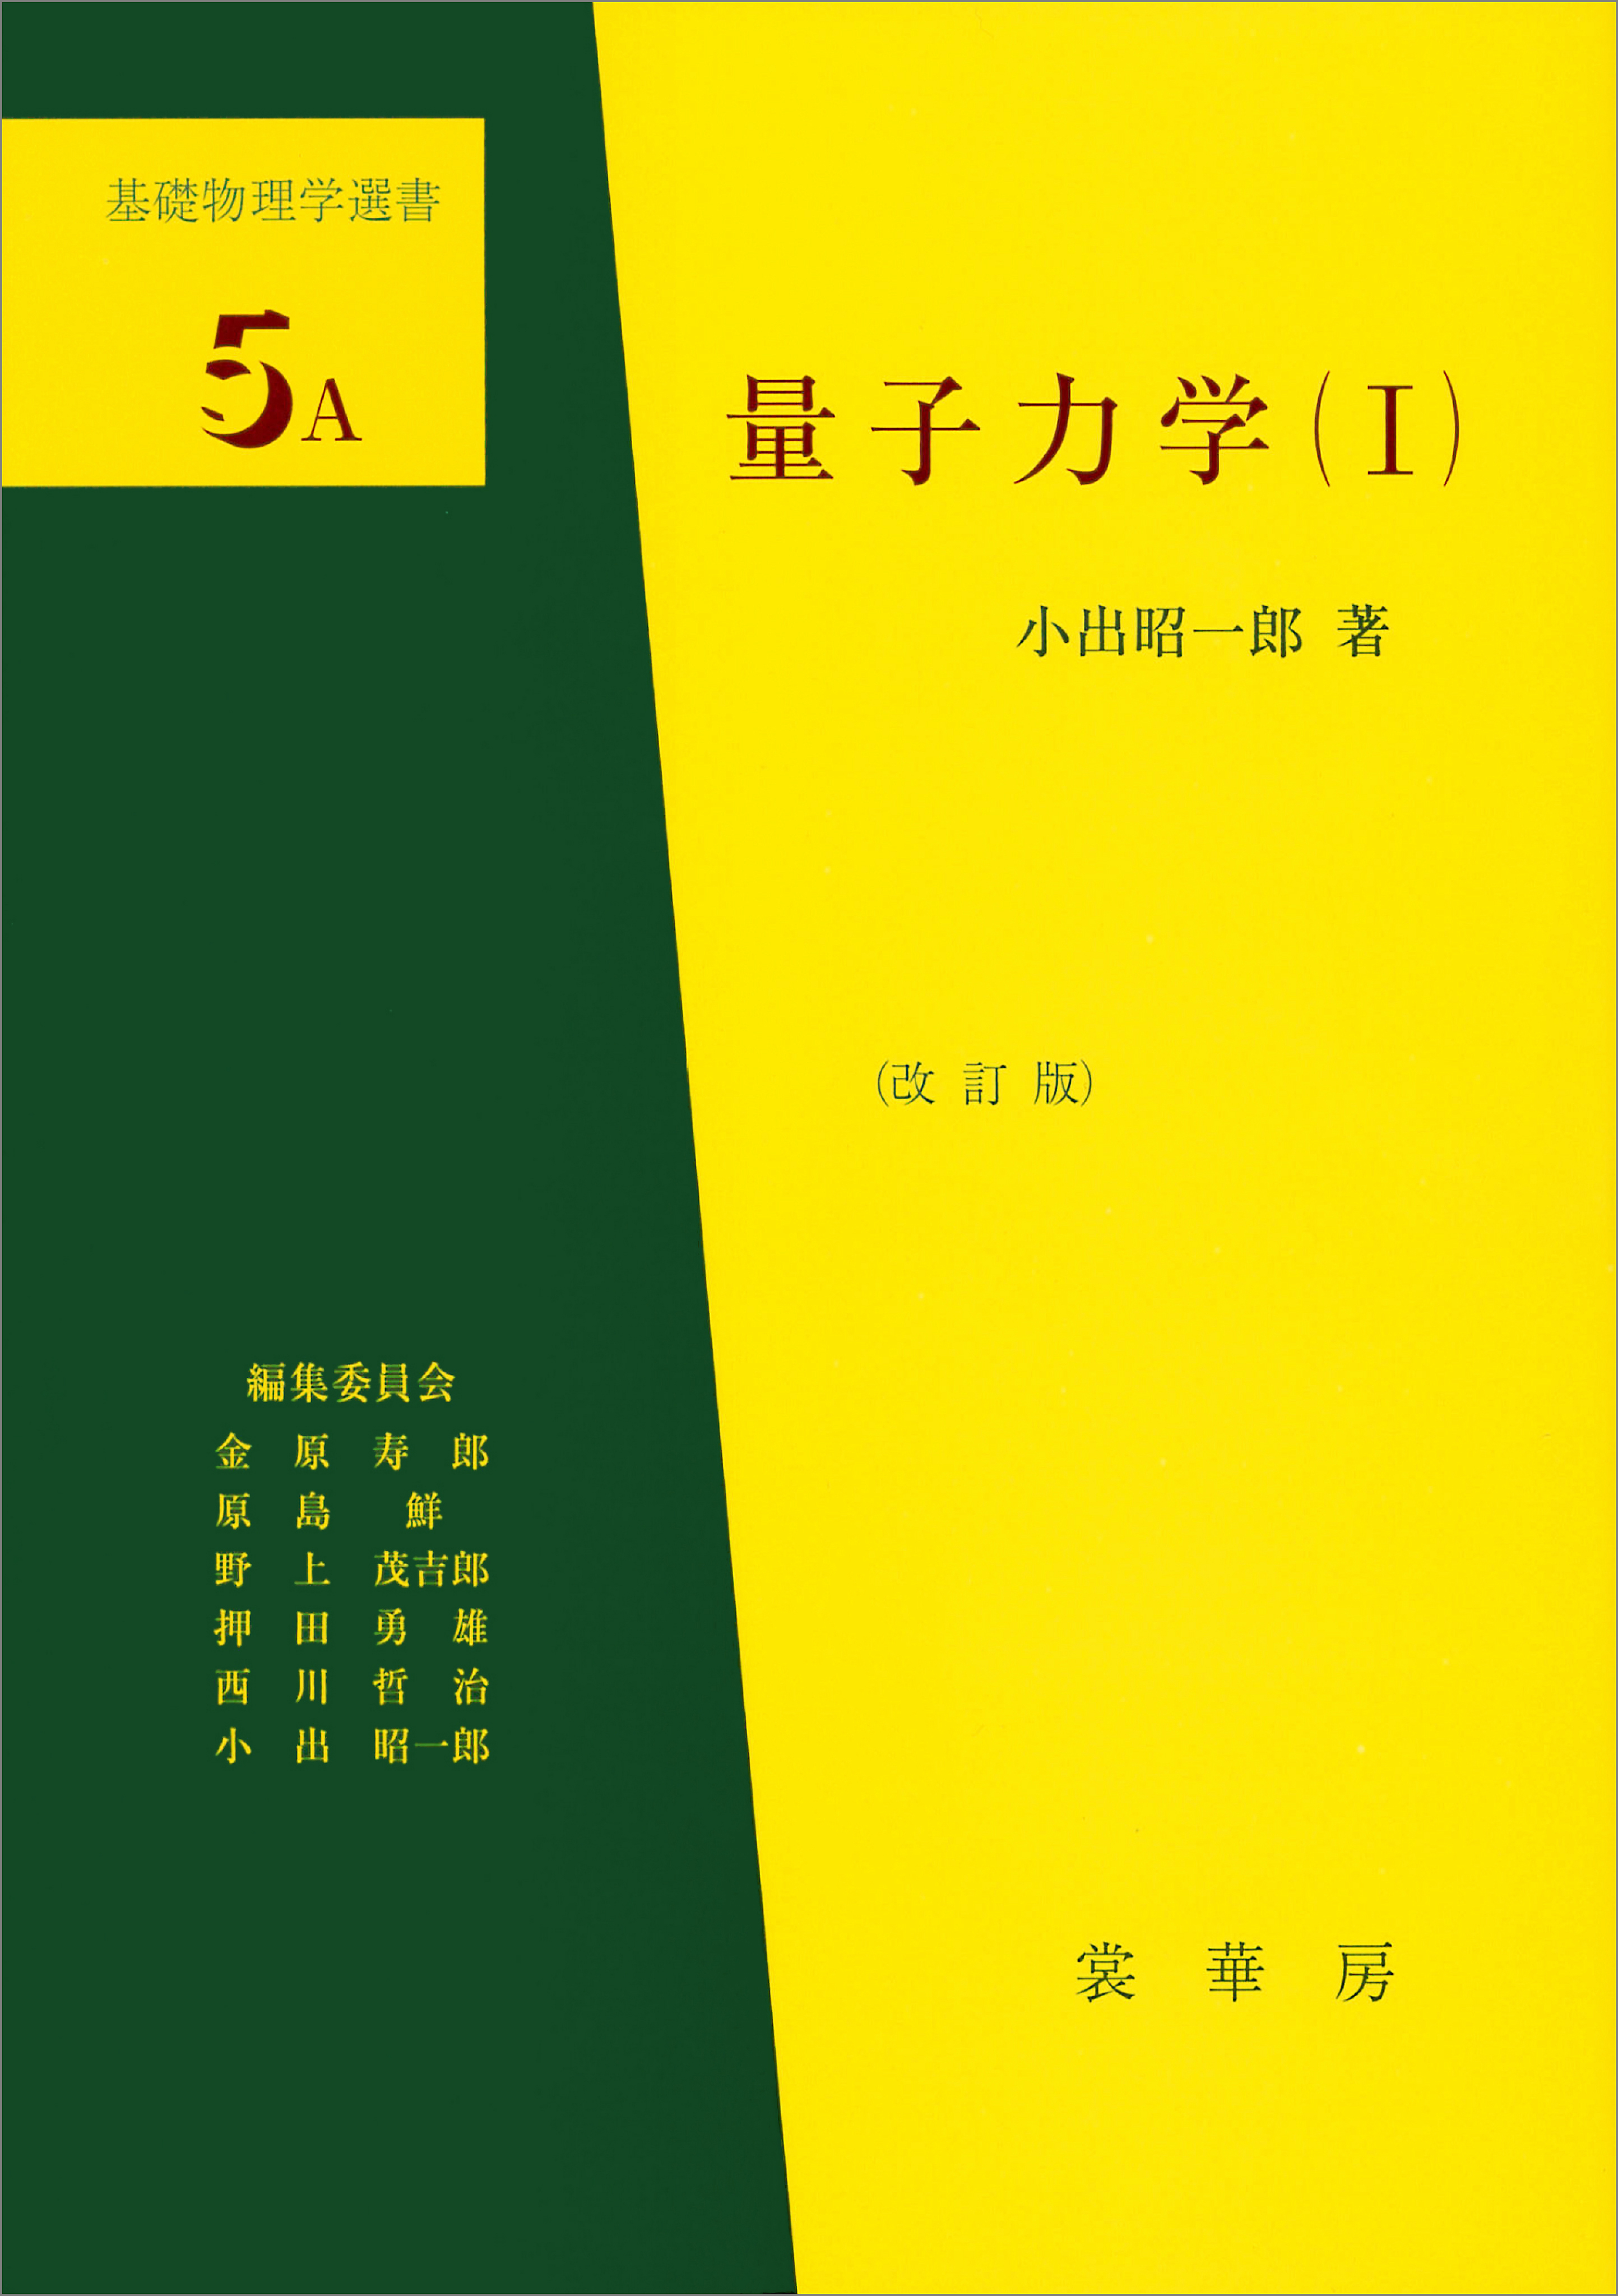 量子力学（I）（改訂版） 基礎物理学選書 5A - 小出昭一郎 - ビジネス ...